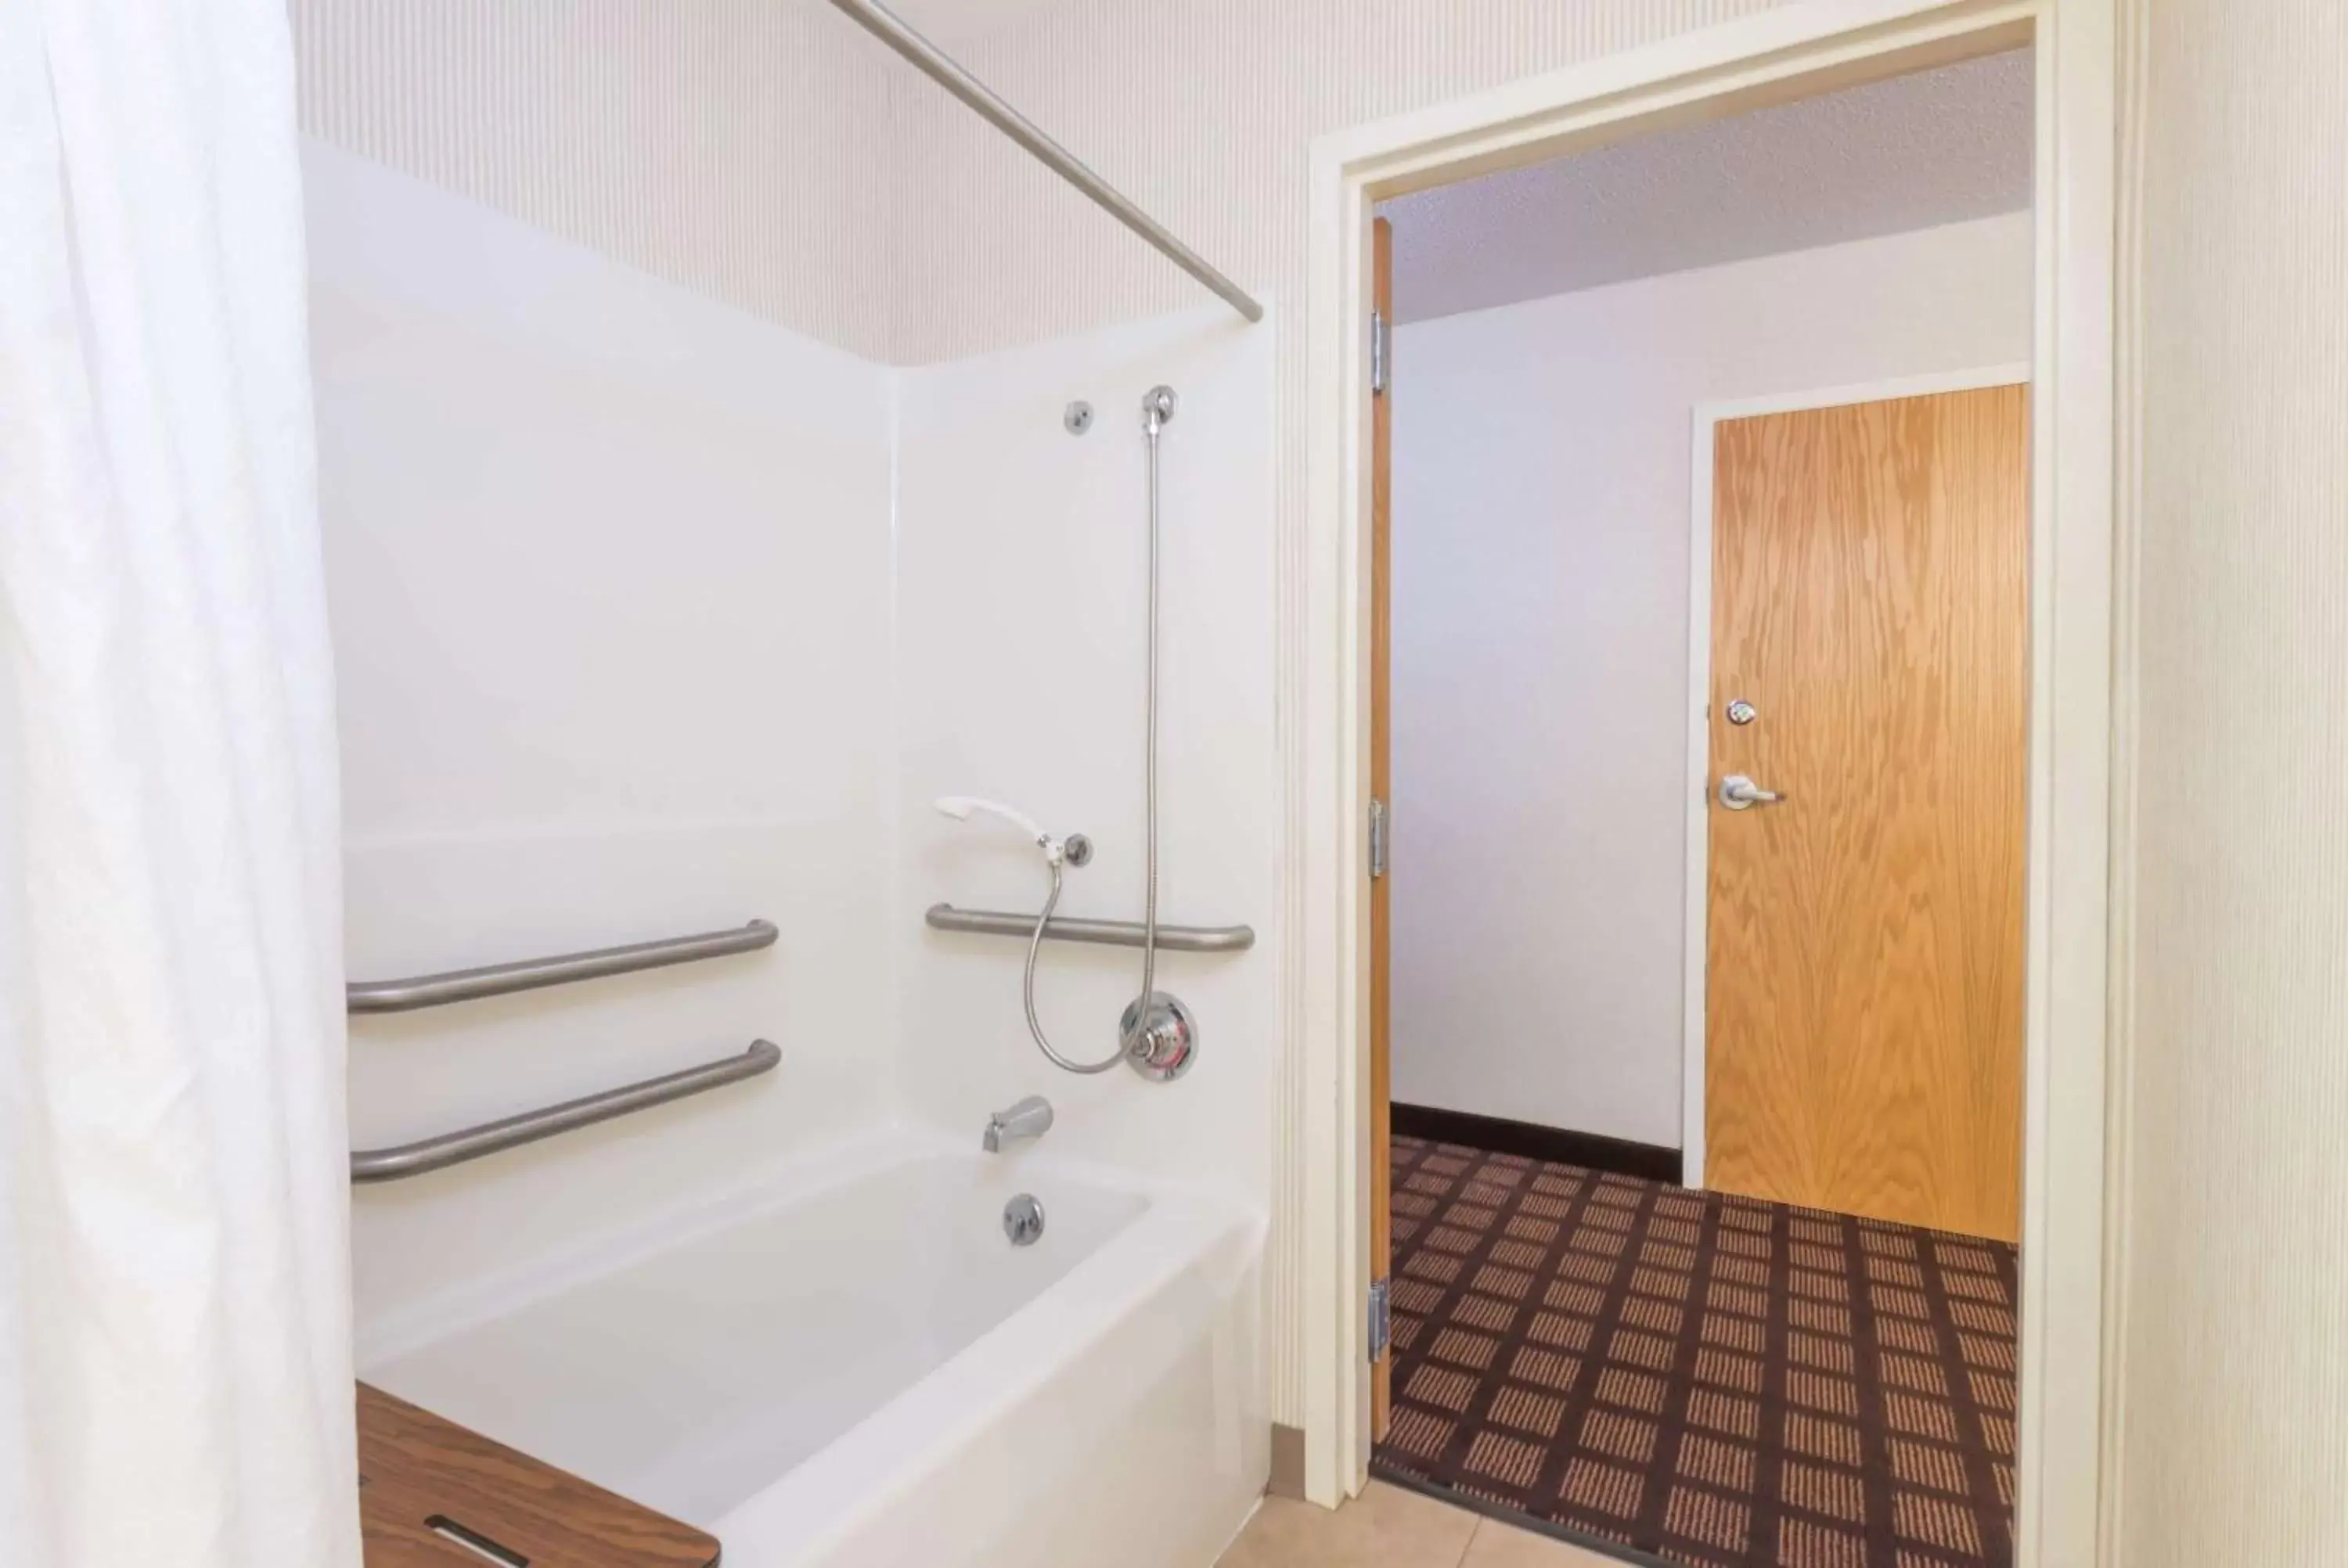 Bathroom in Microtel Inn & Suites by Wyndham Uncasville